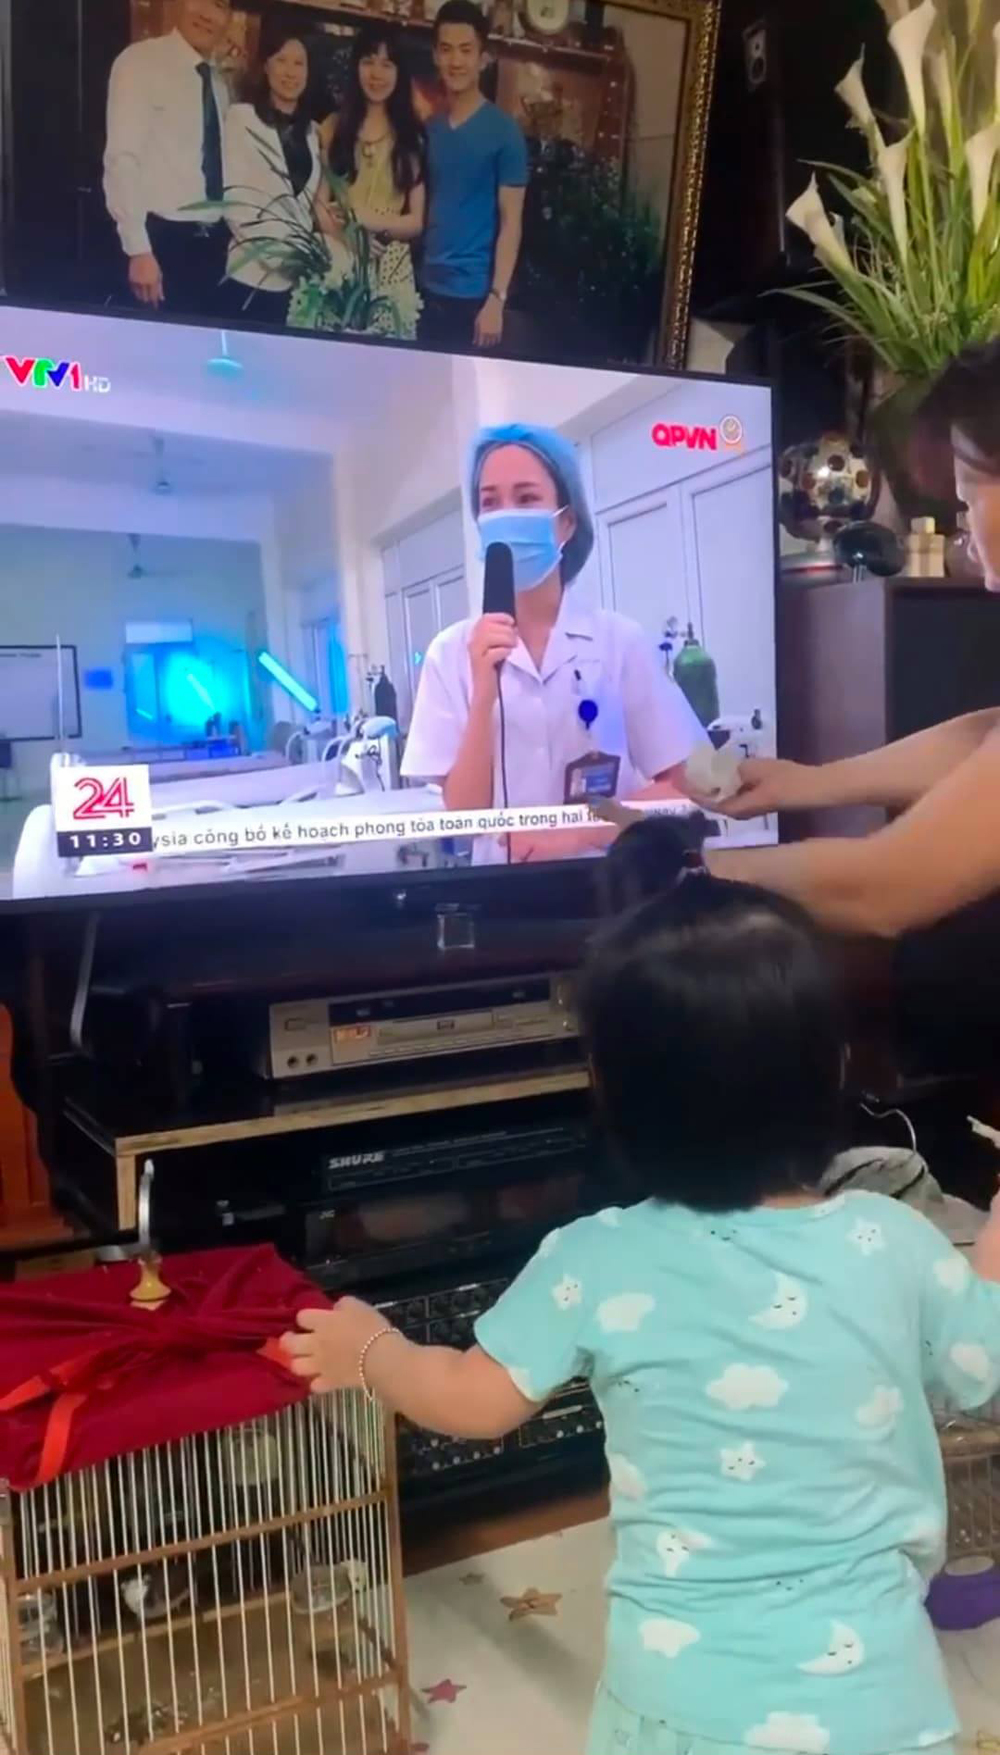  
Bé gái giơ tay đòi bế khi thấy mẹ trên tivi. (Ảnh: H.M.)